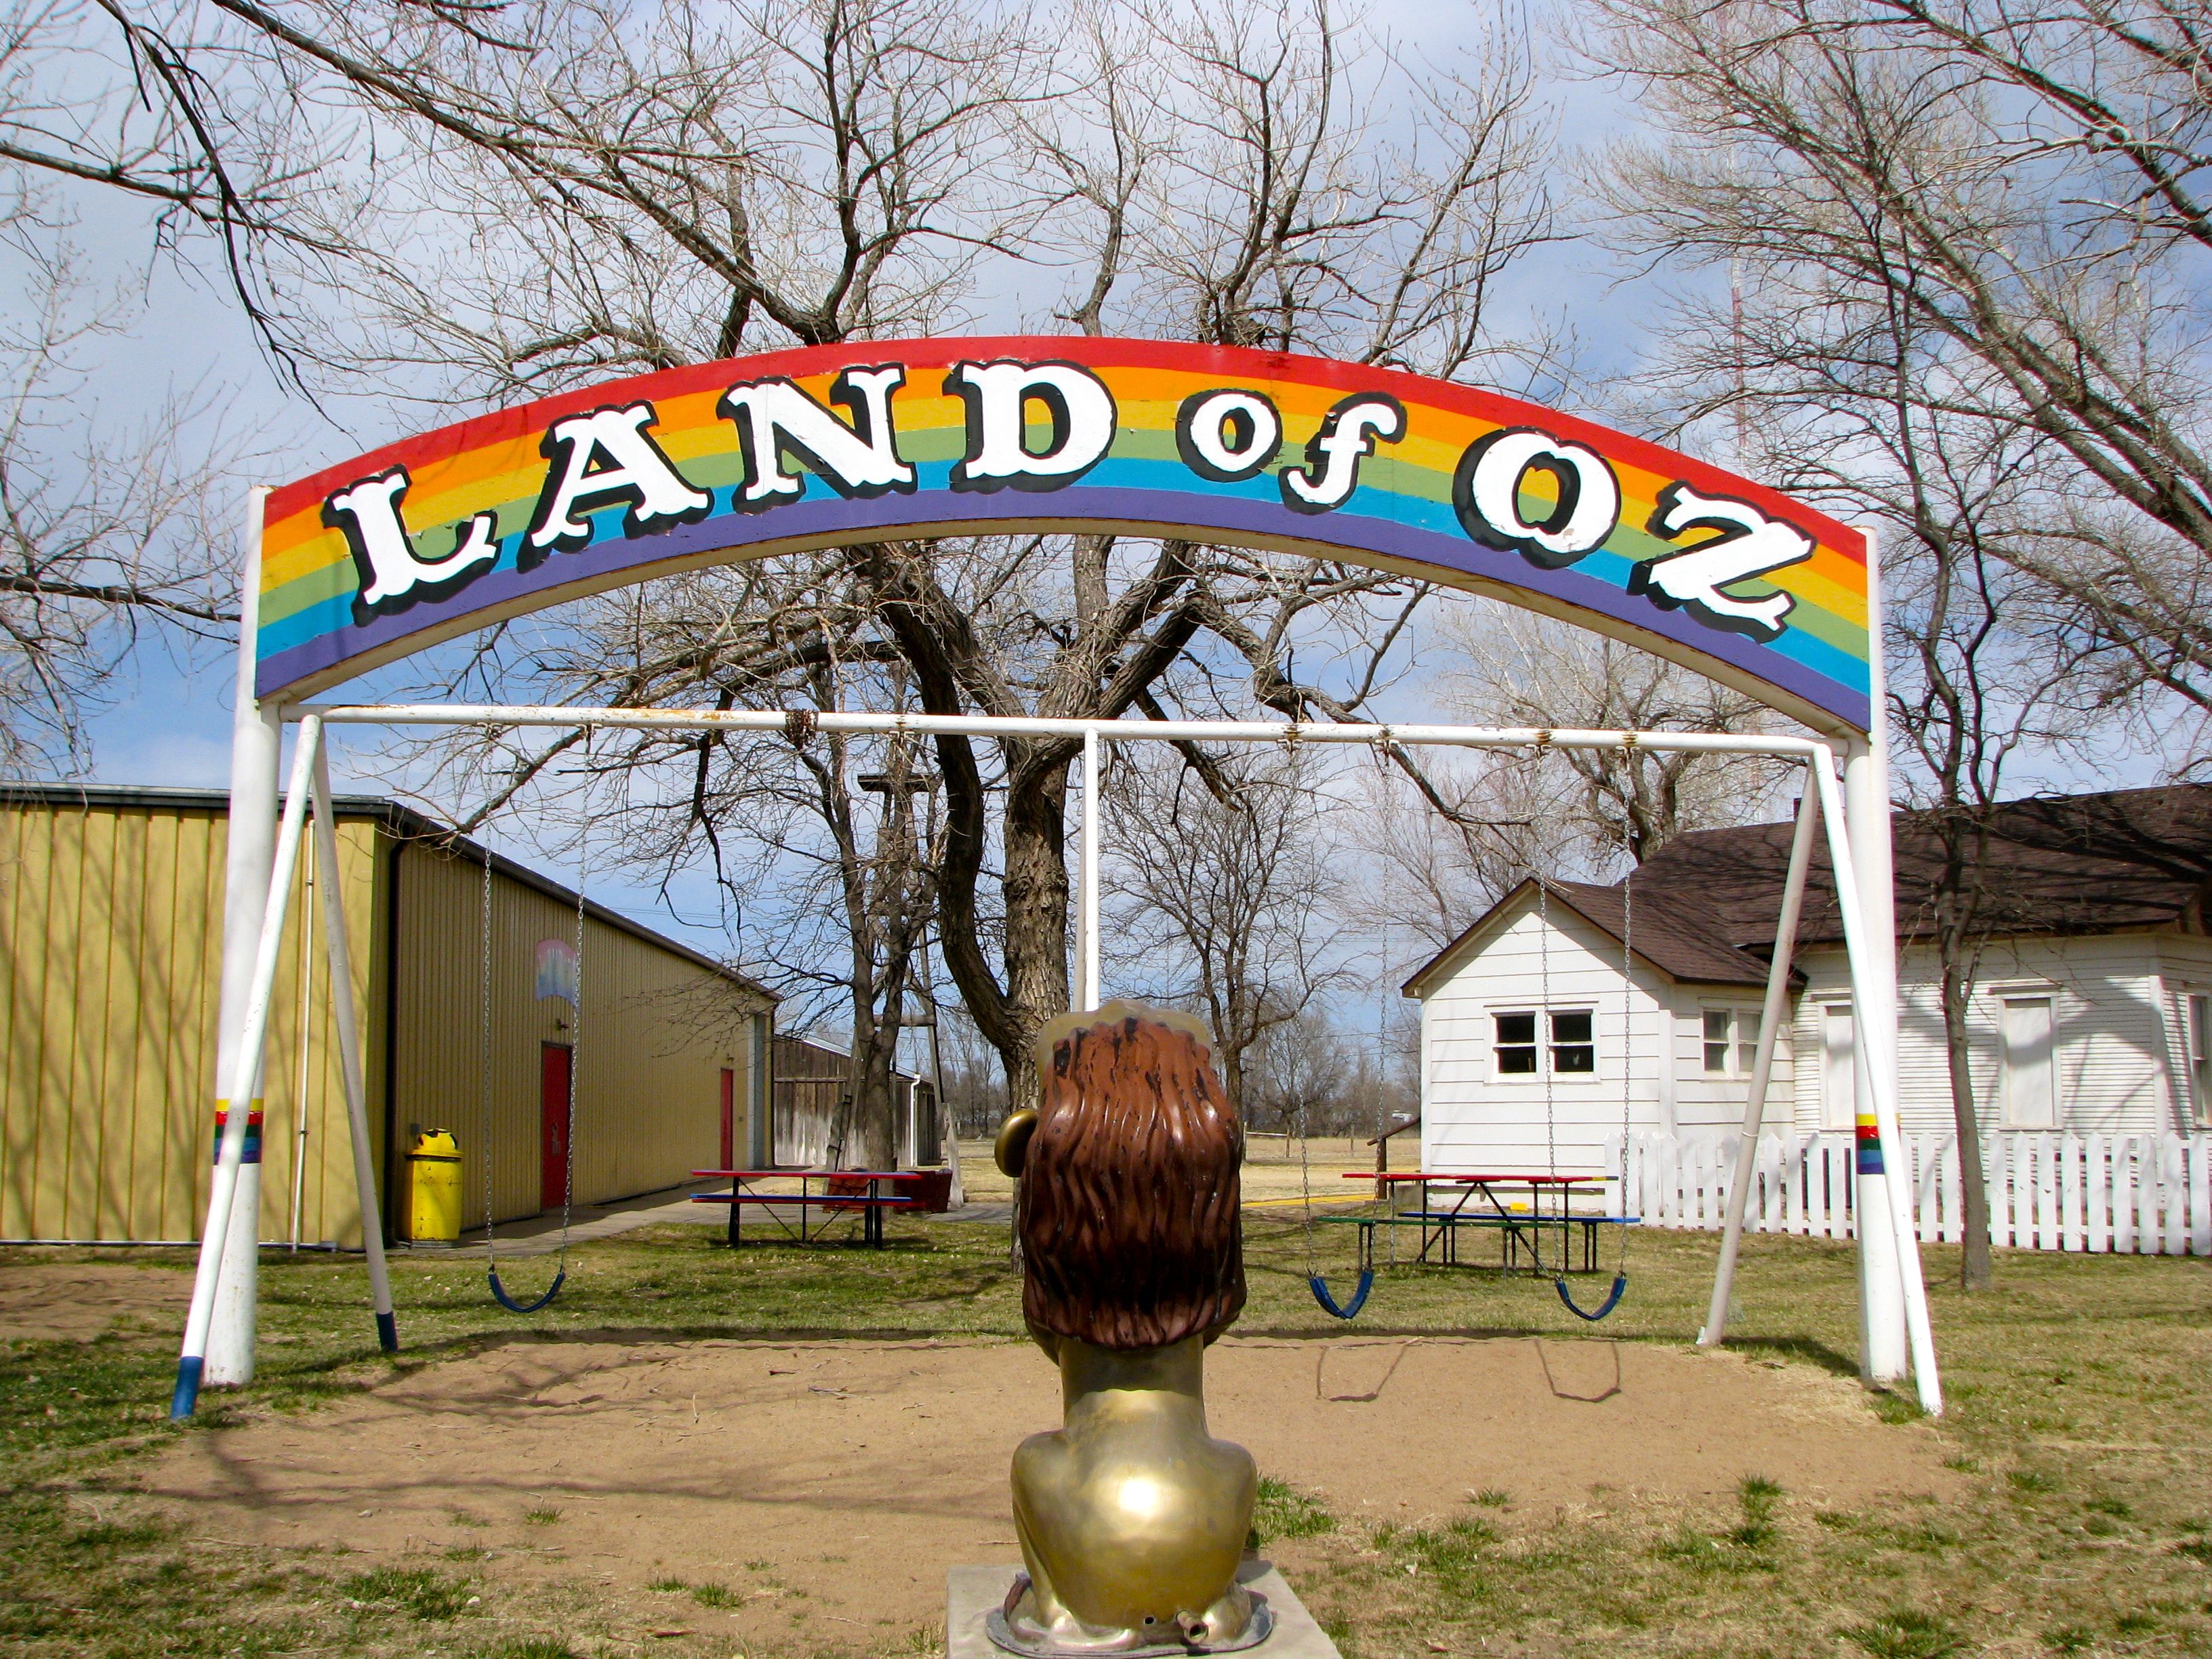 Kansas: Land of Oz